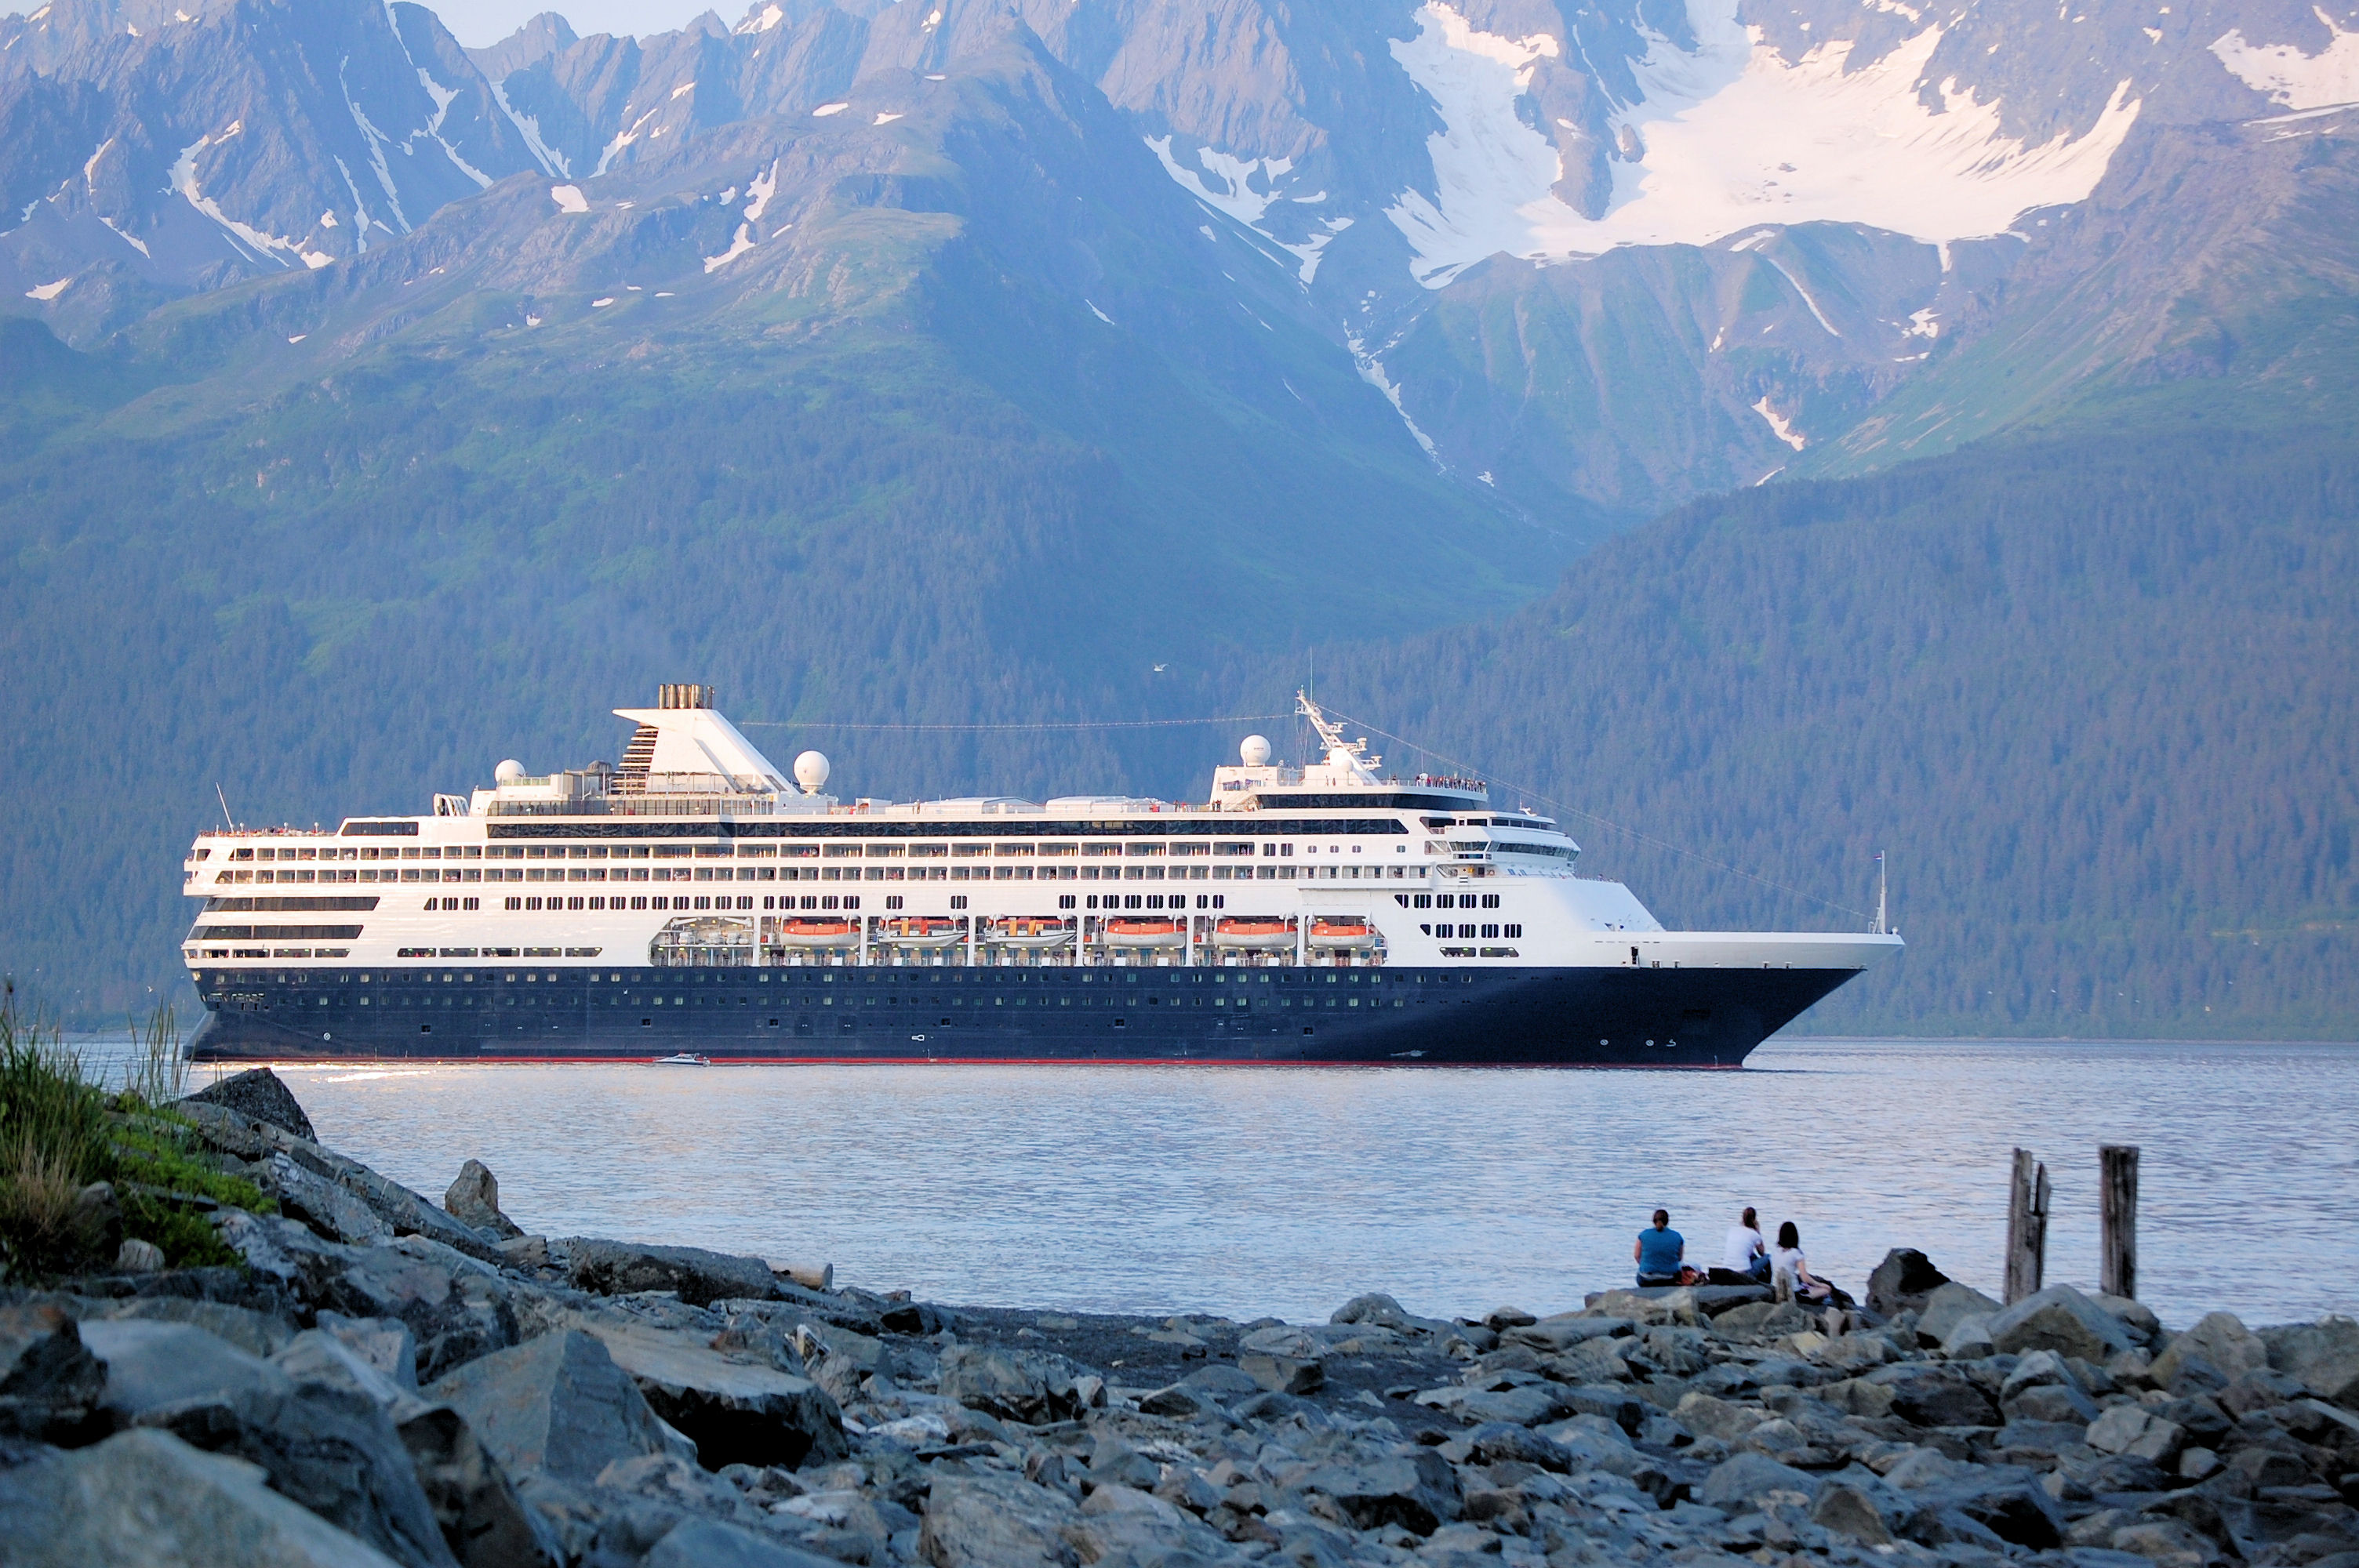 A Cruise Ship Leaving Seward, Alaska Hoshana Rabbah BlogHoshana